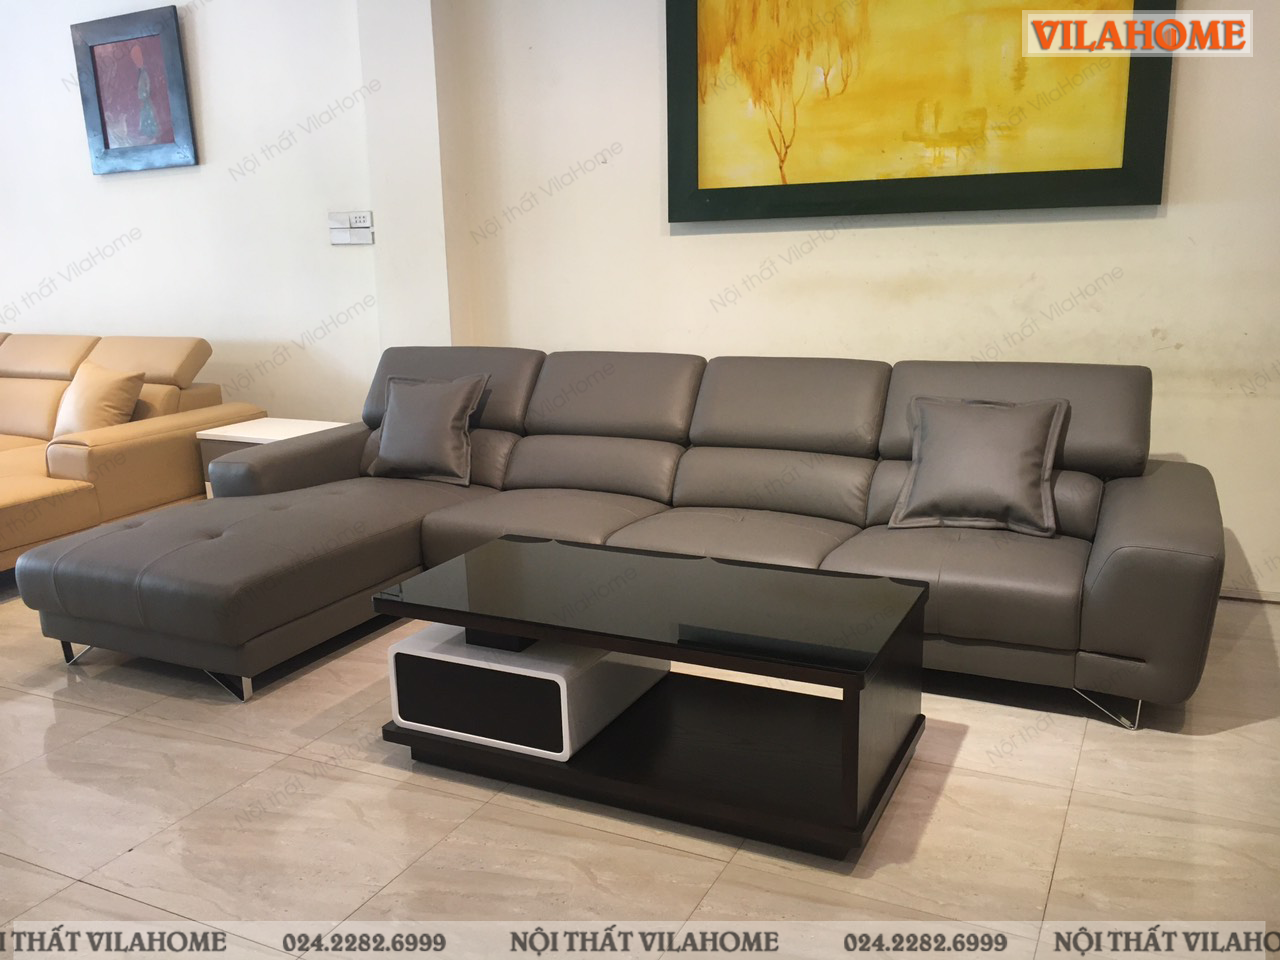 Sofa góc da màu xám được một khách hàng ở phường Yên Hòa, quận Cầu Giấy lựa chọn.